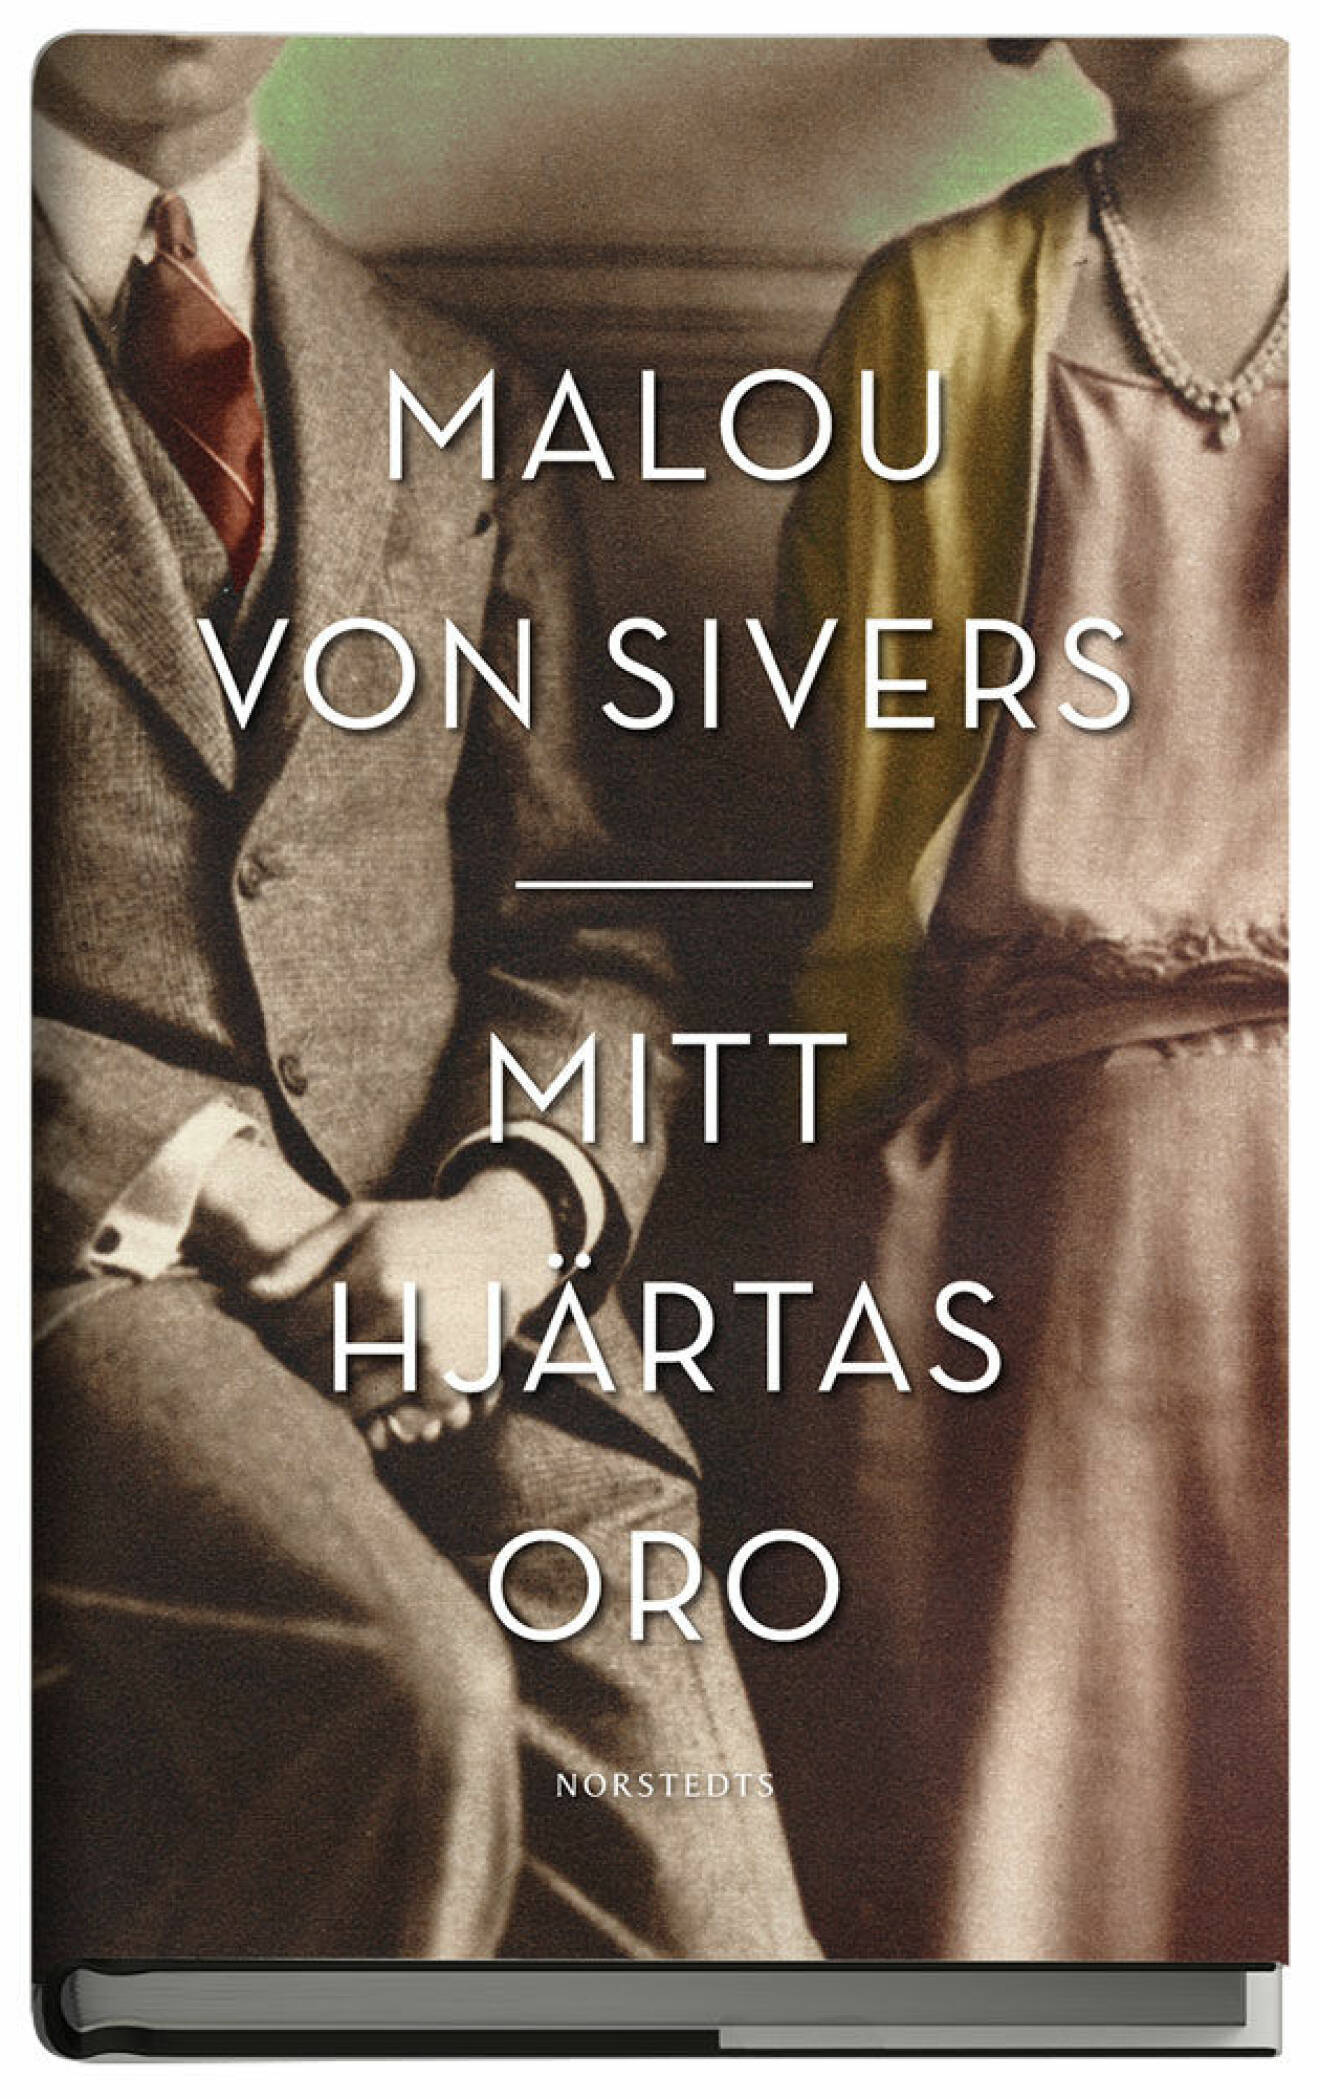 Familjehistorien Mitt hjärtas oro av Malou von Sivers